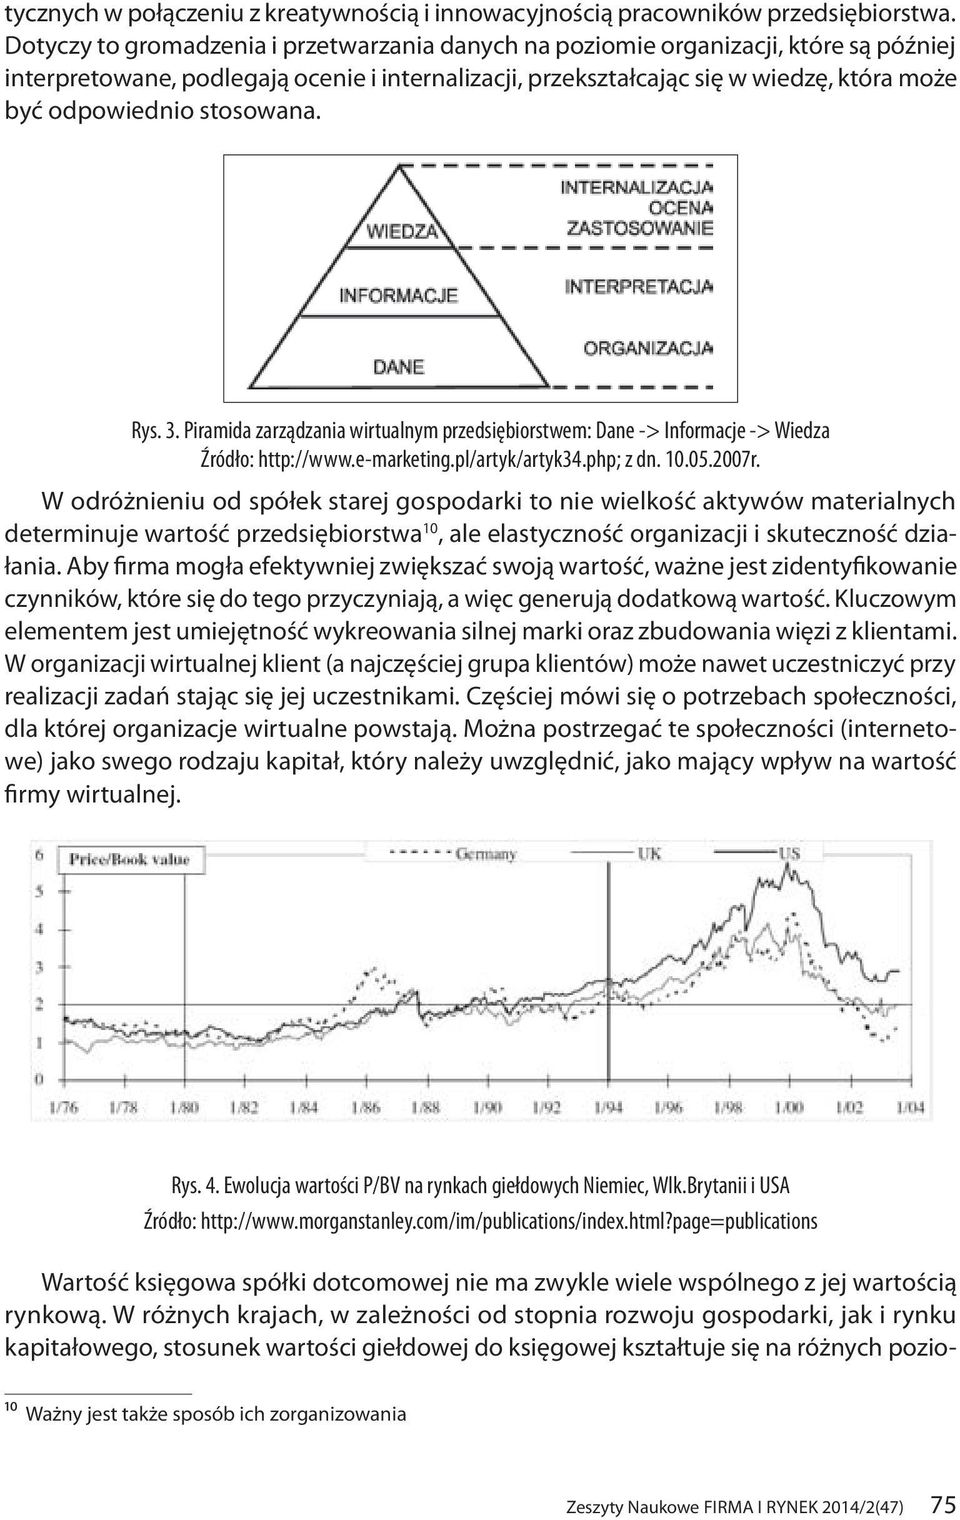 stosowana. Rys. 3. Piramida zarządzania wirtualnym przedsiębiorstwem: Dane -> Informacje -> Wiedza Źródło: http://www.e-marketing.pl/artyk/artyk34.php; z dn. 10.05.2007r.